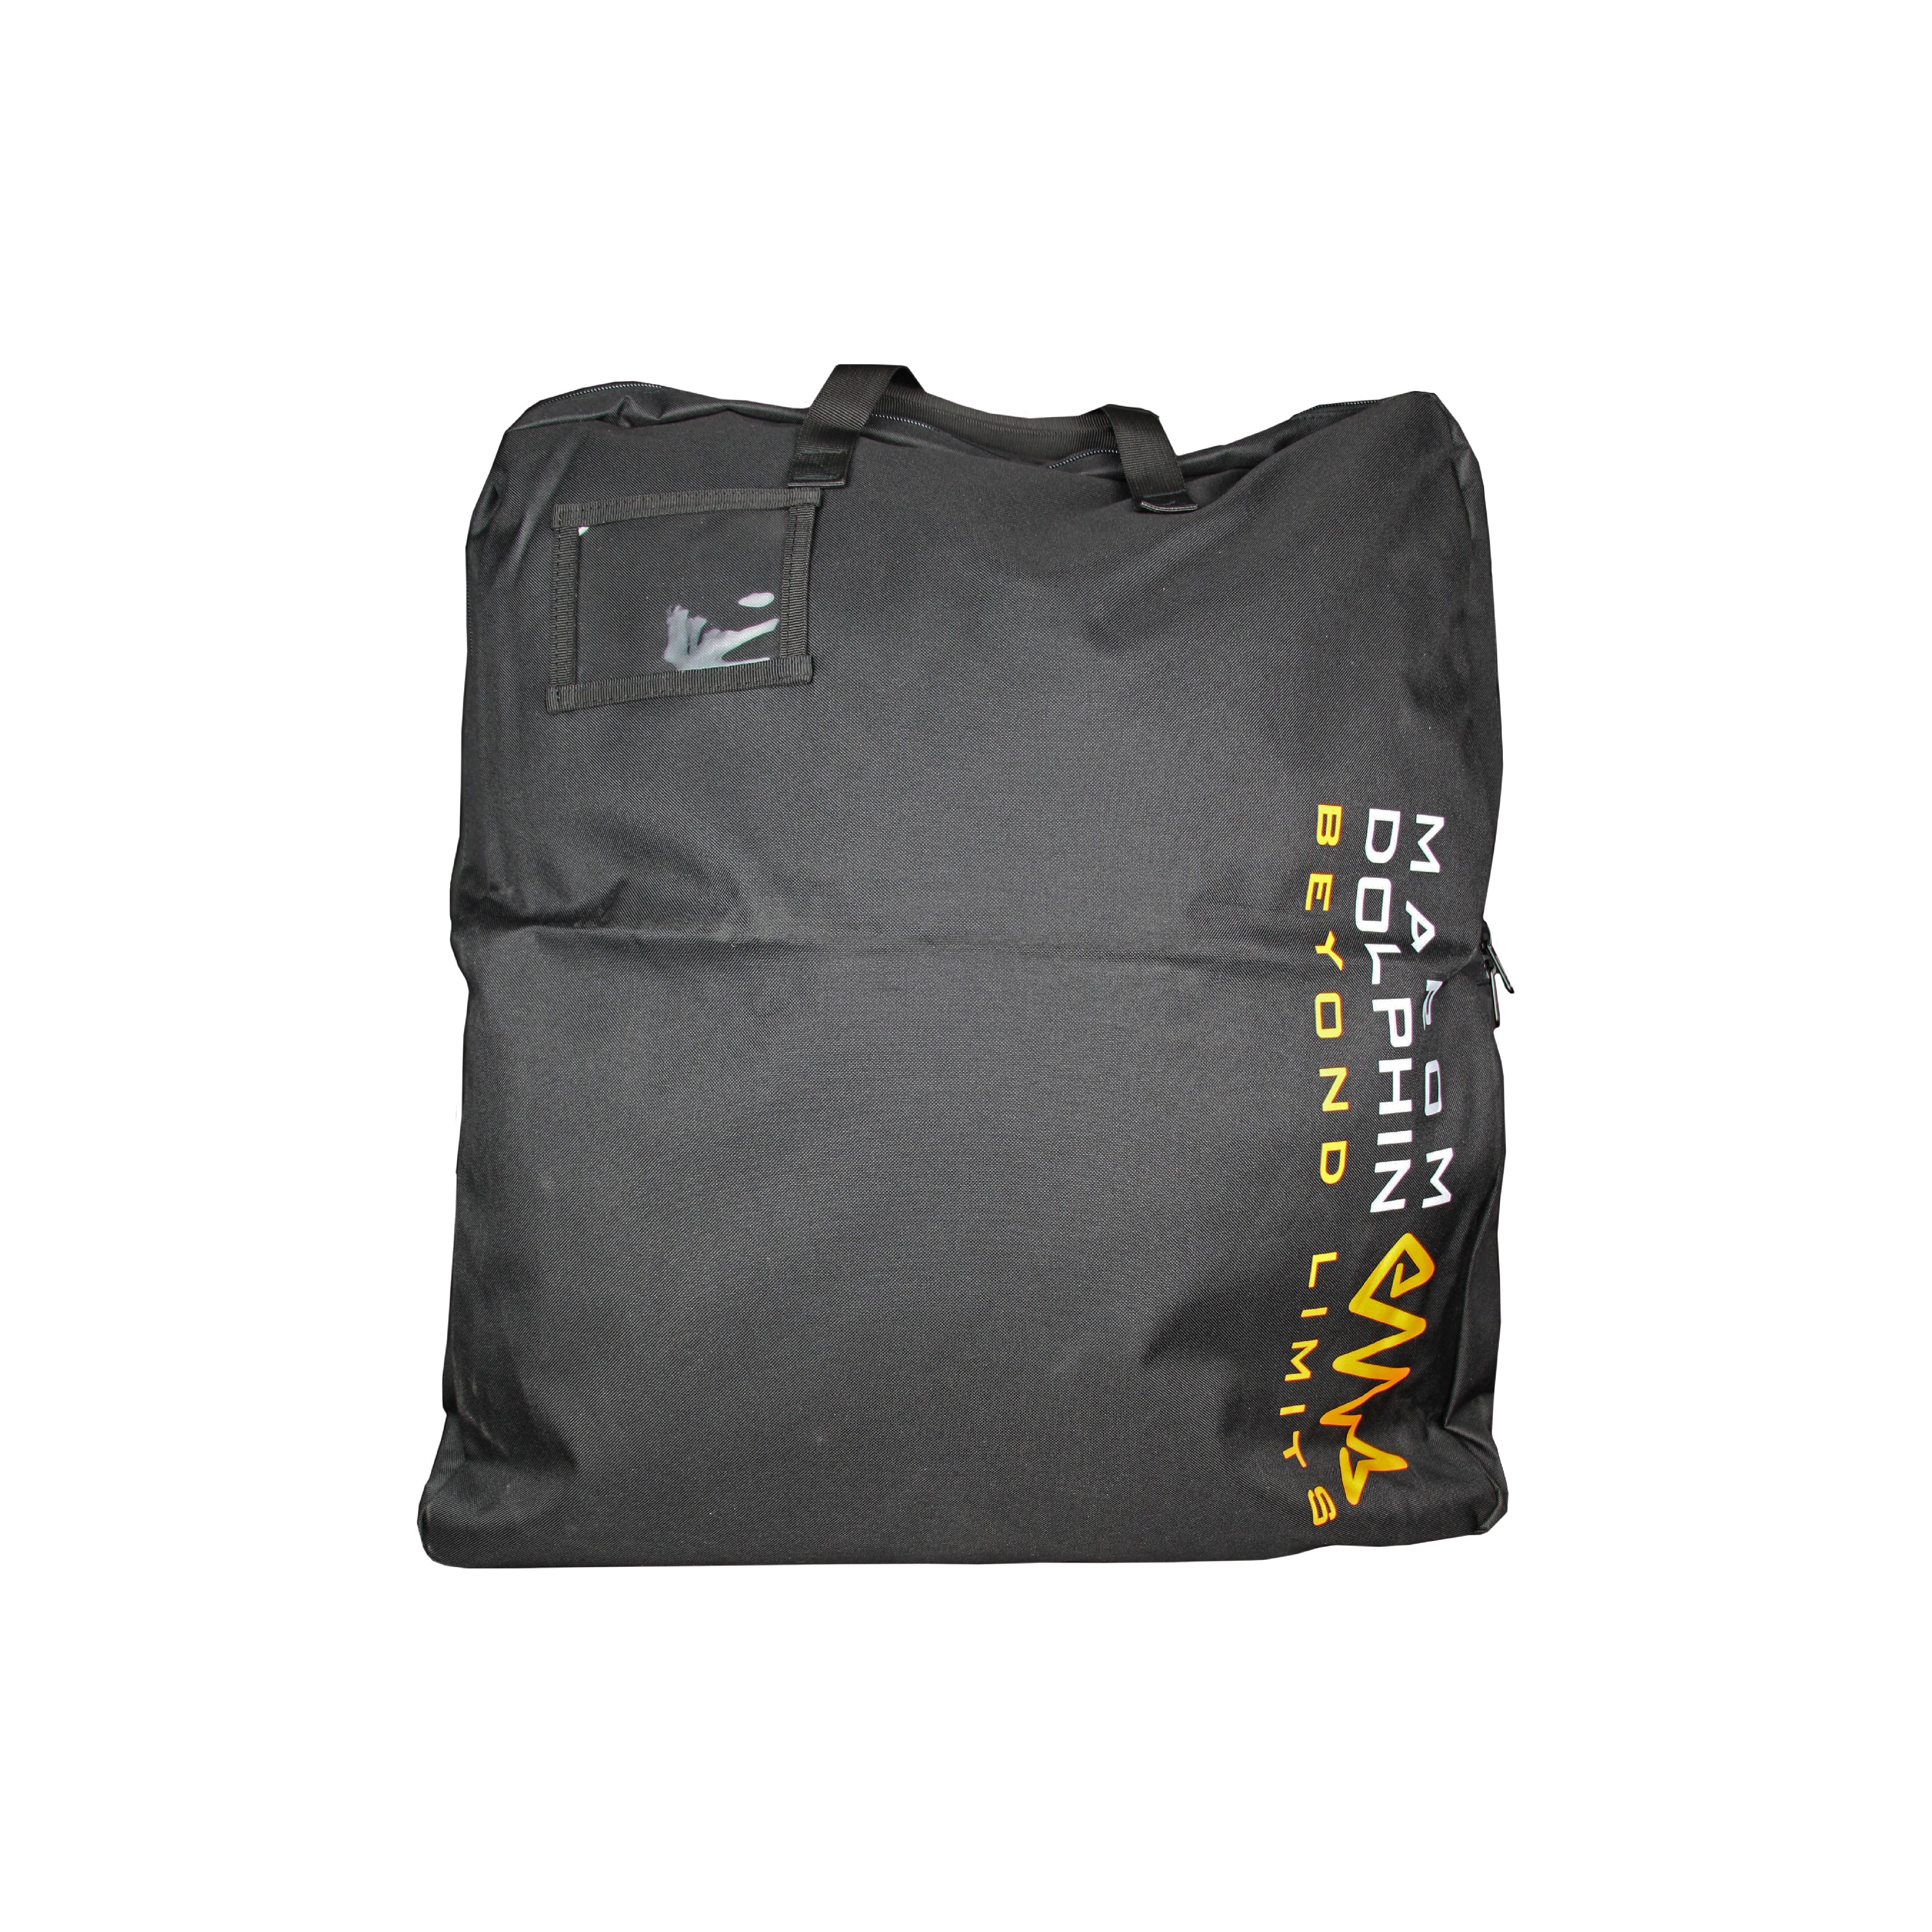 Personal Vest Bag - תיק לוסט וציוד אישי מרעום דולפין 